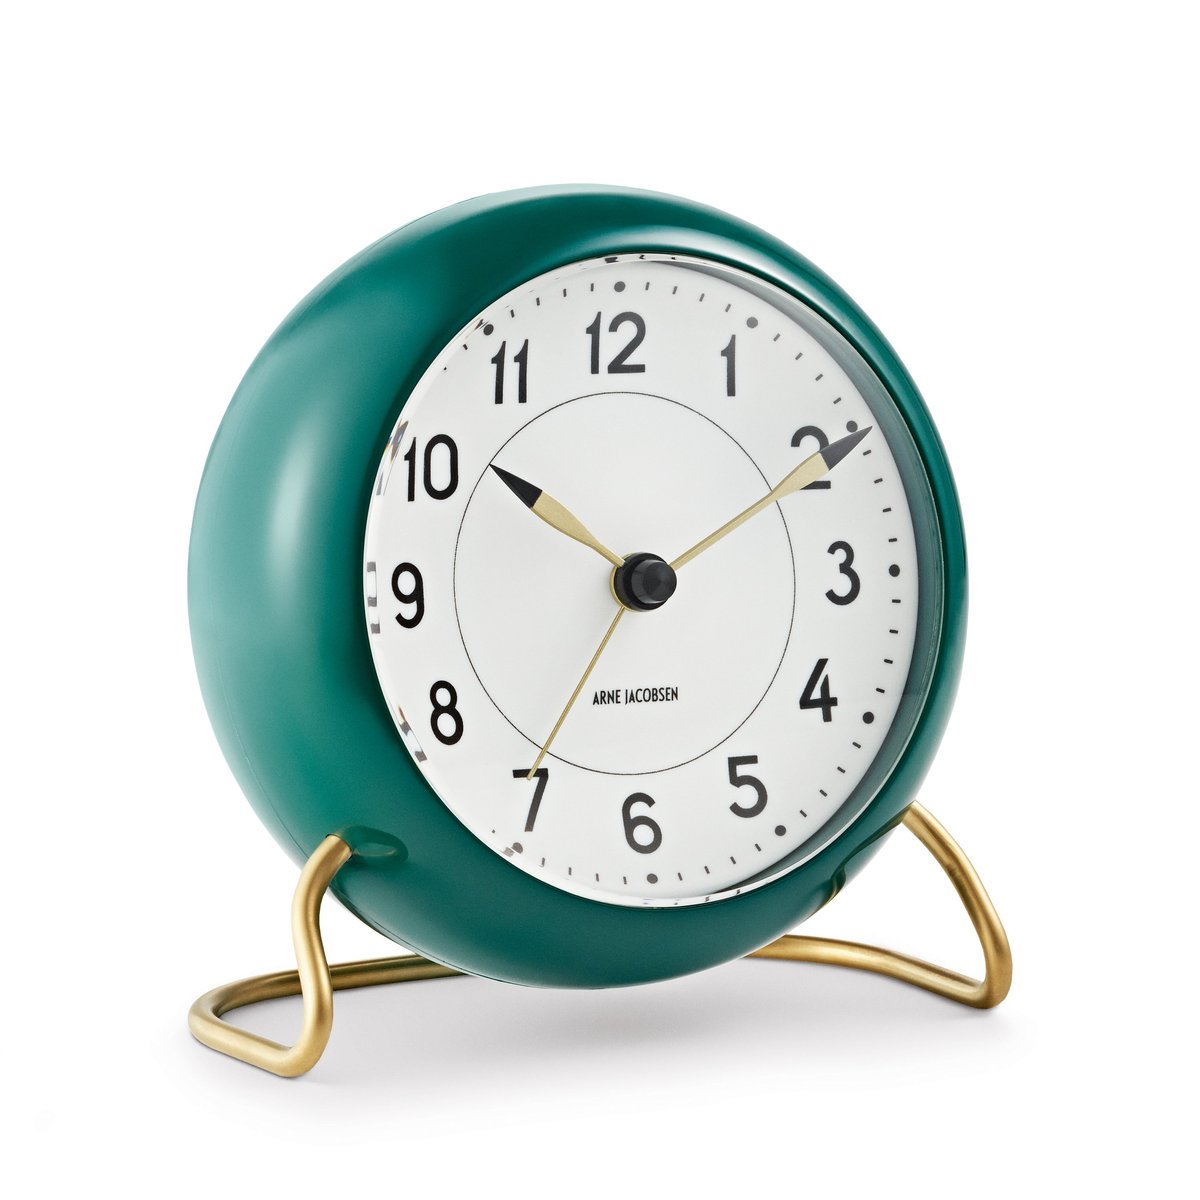 Arne Jacobsen Clocks AJ Station bord ur grøn grøn (5709513436775)